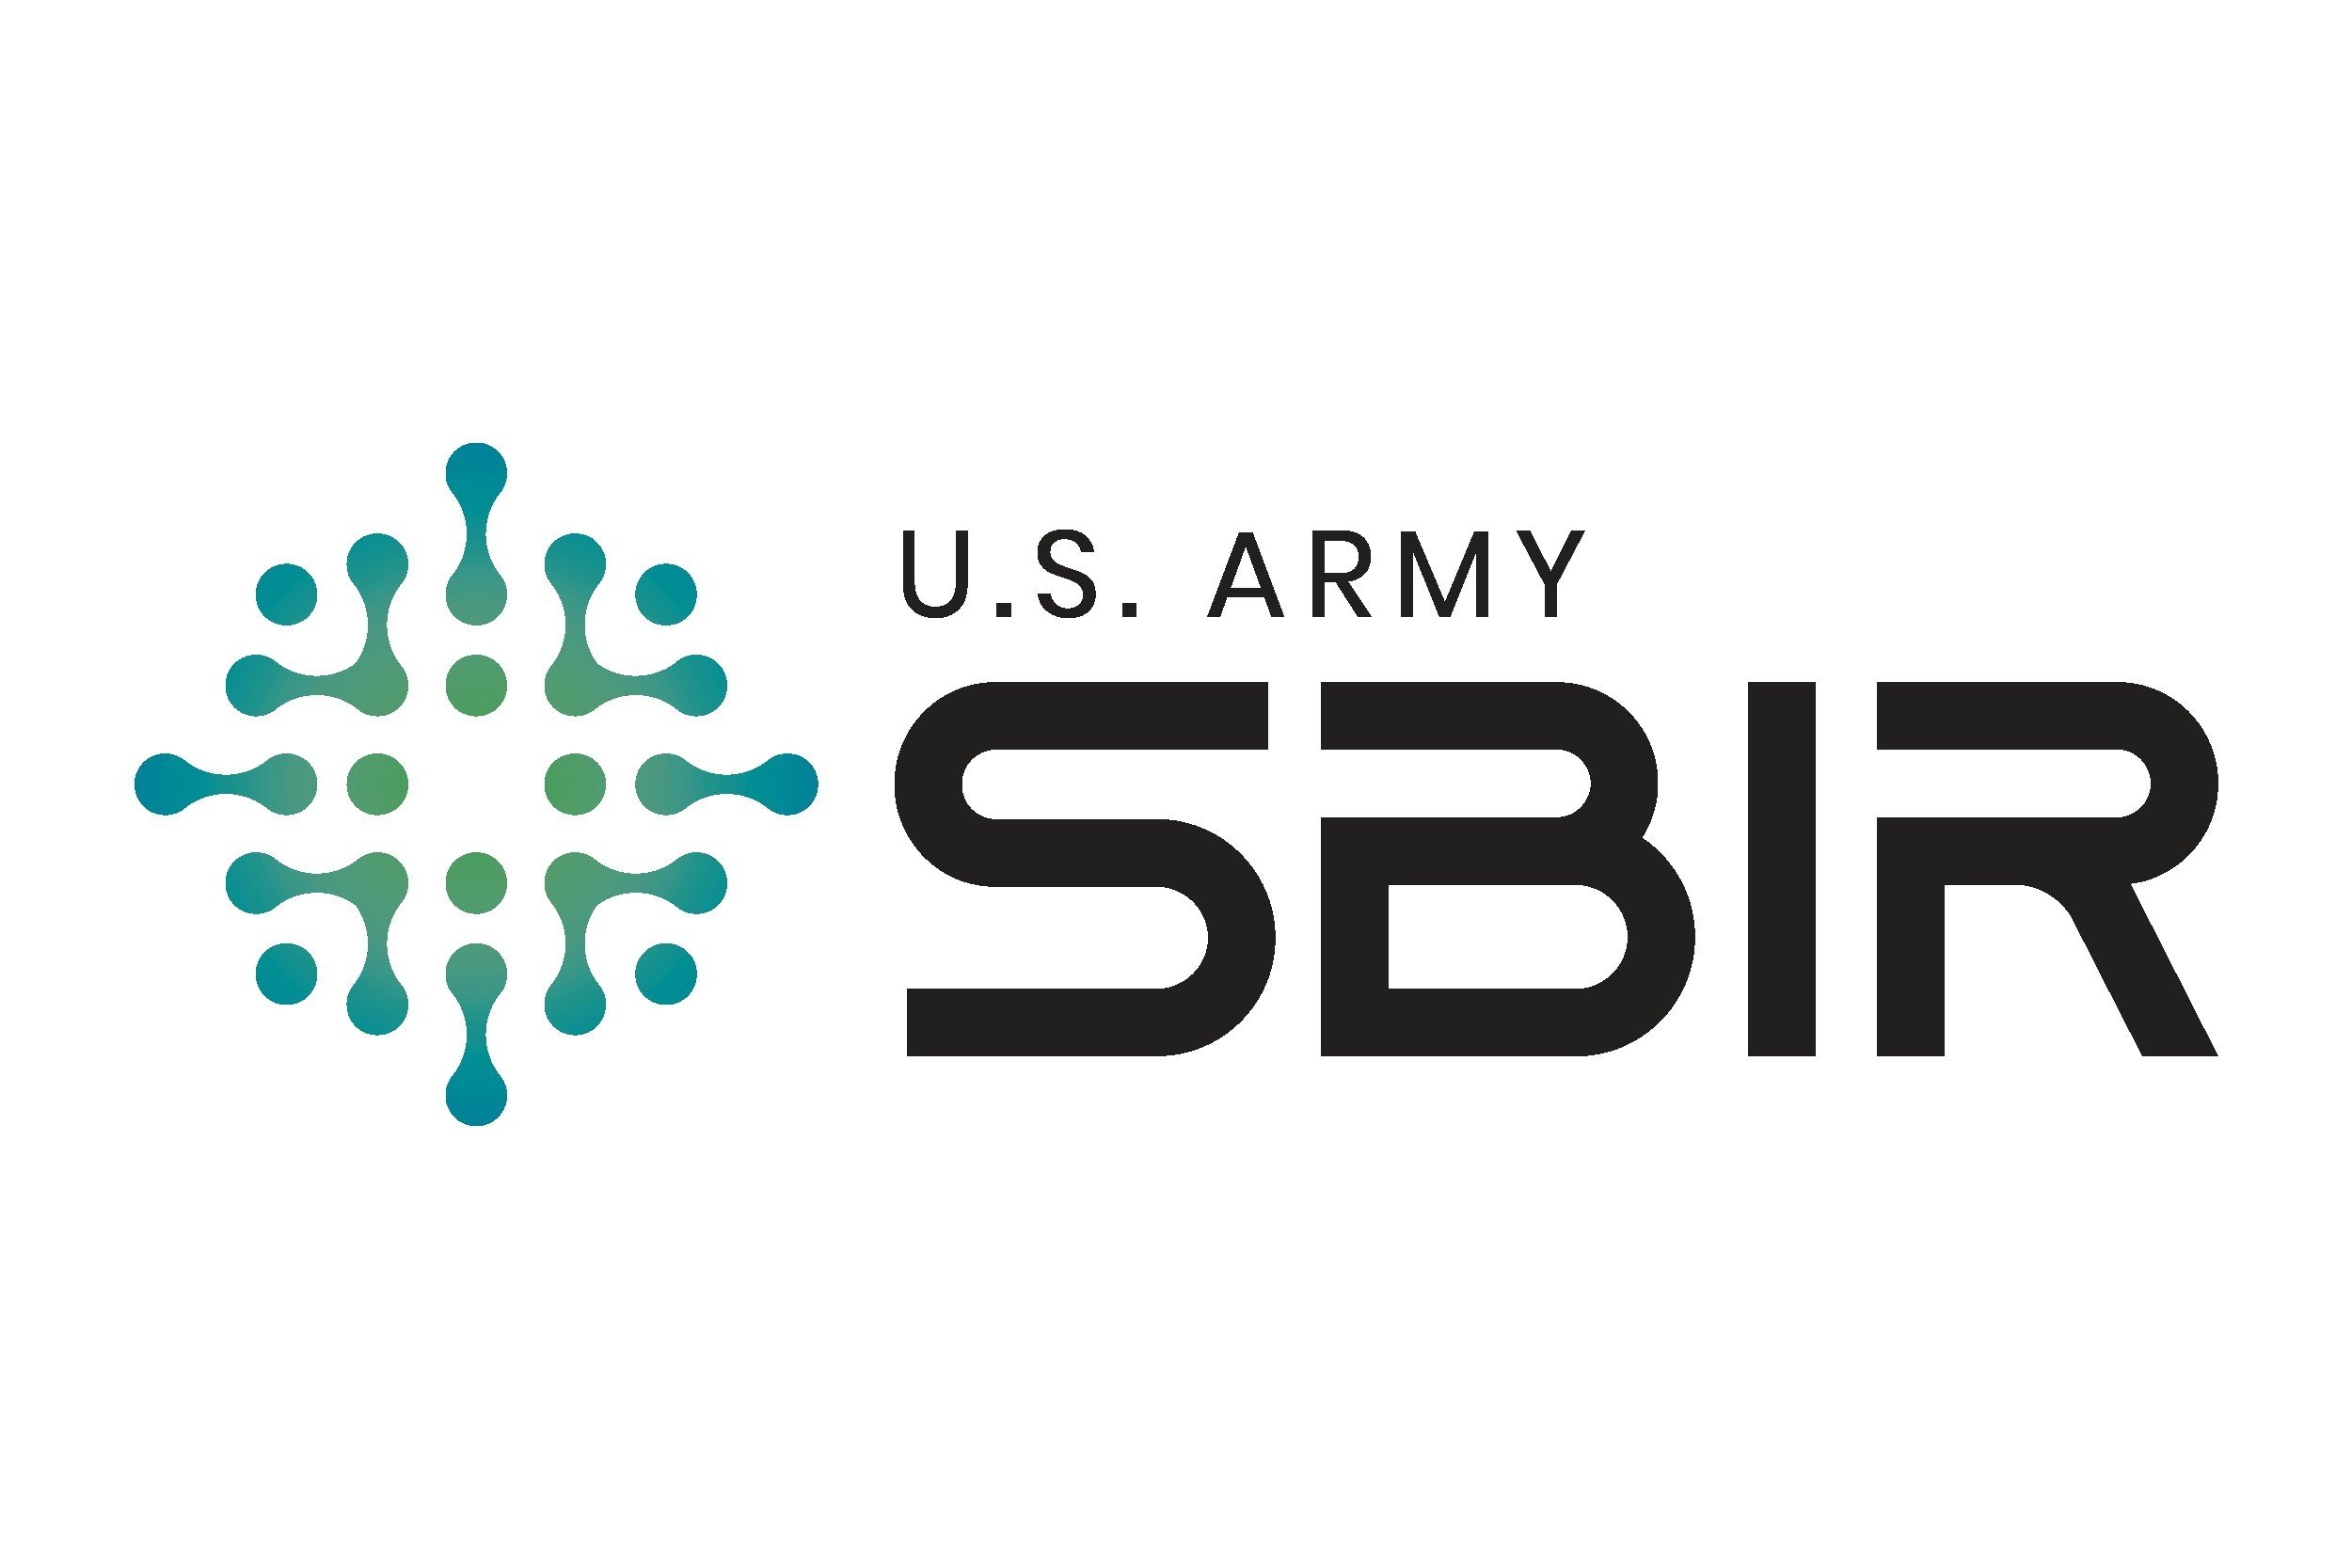 U.S. Army SBIR logo